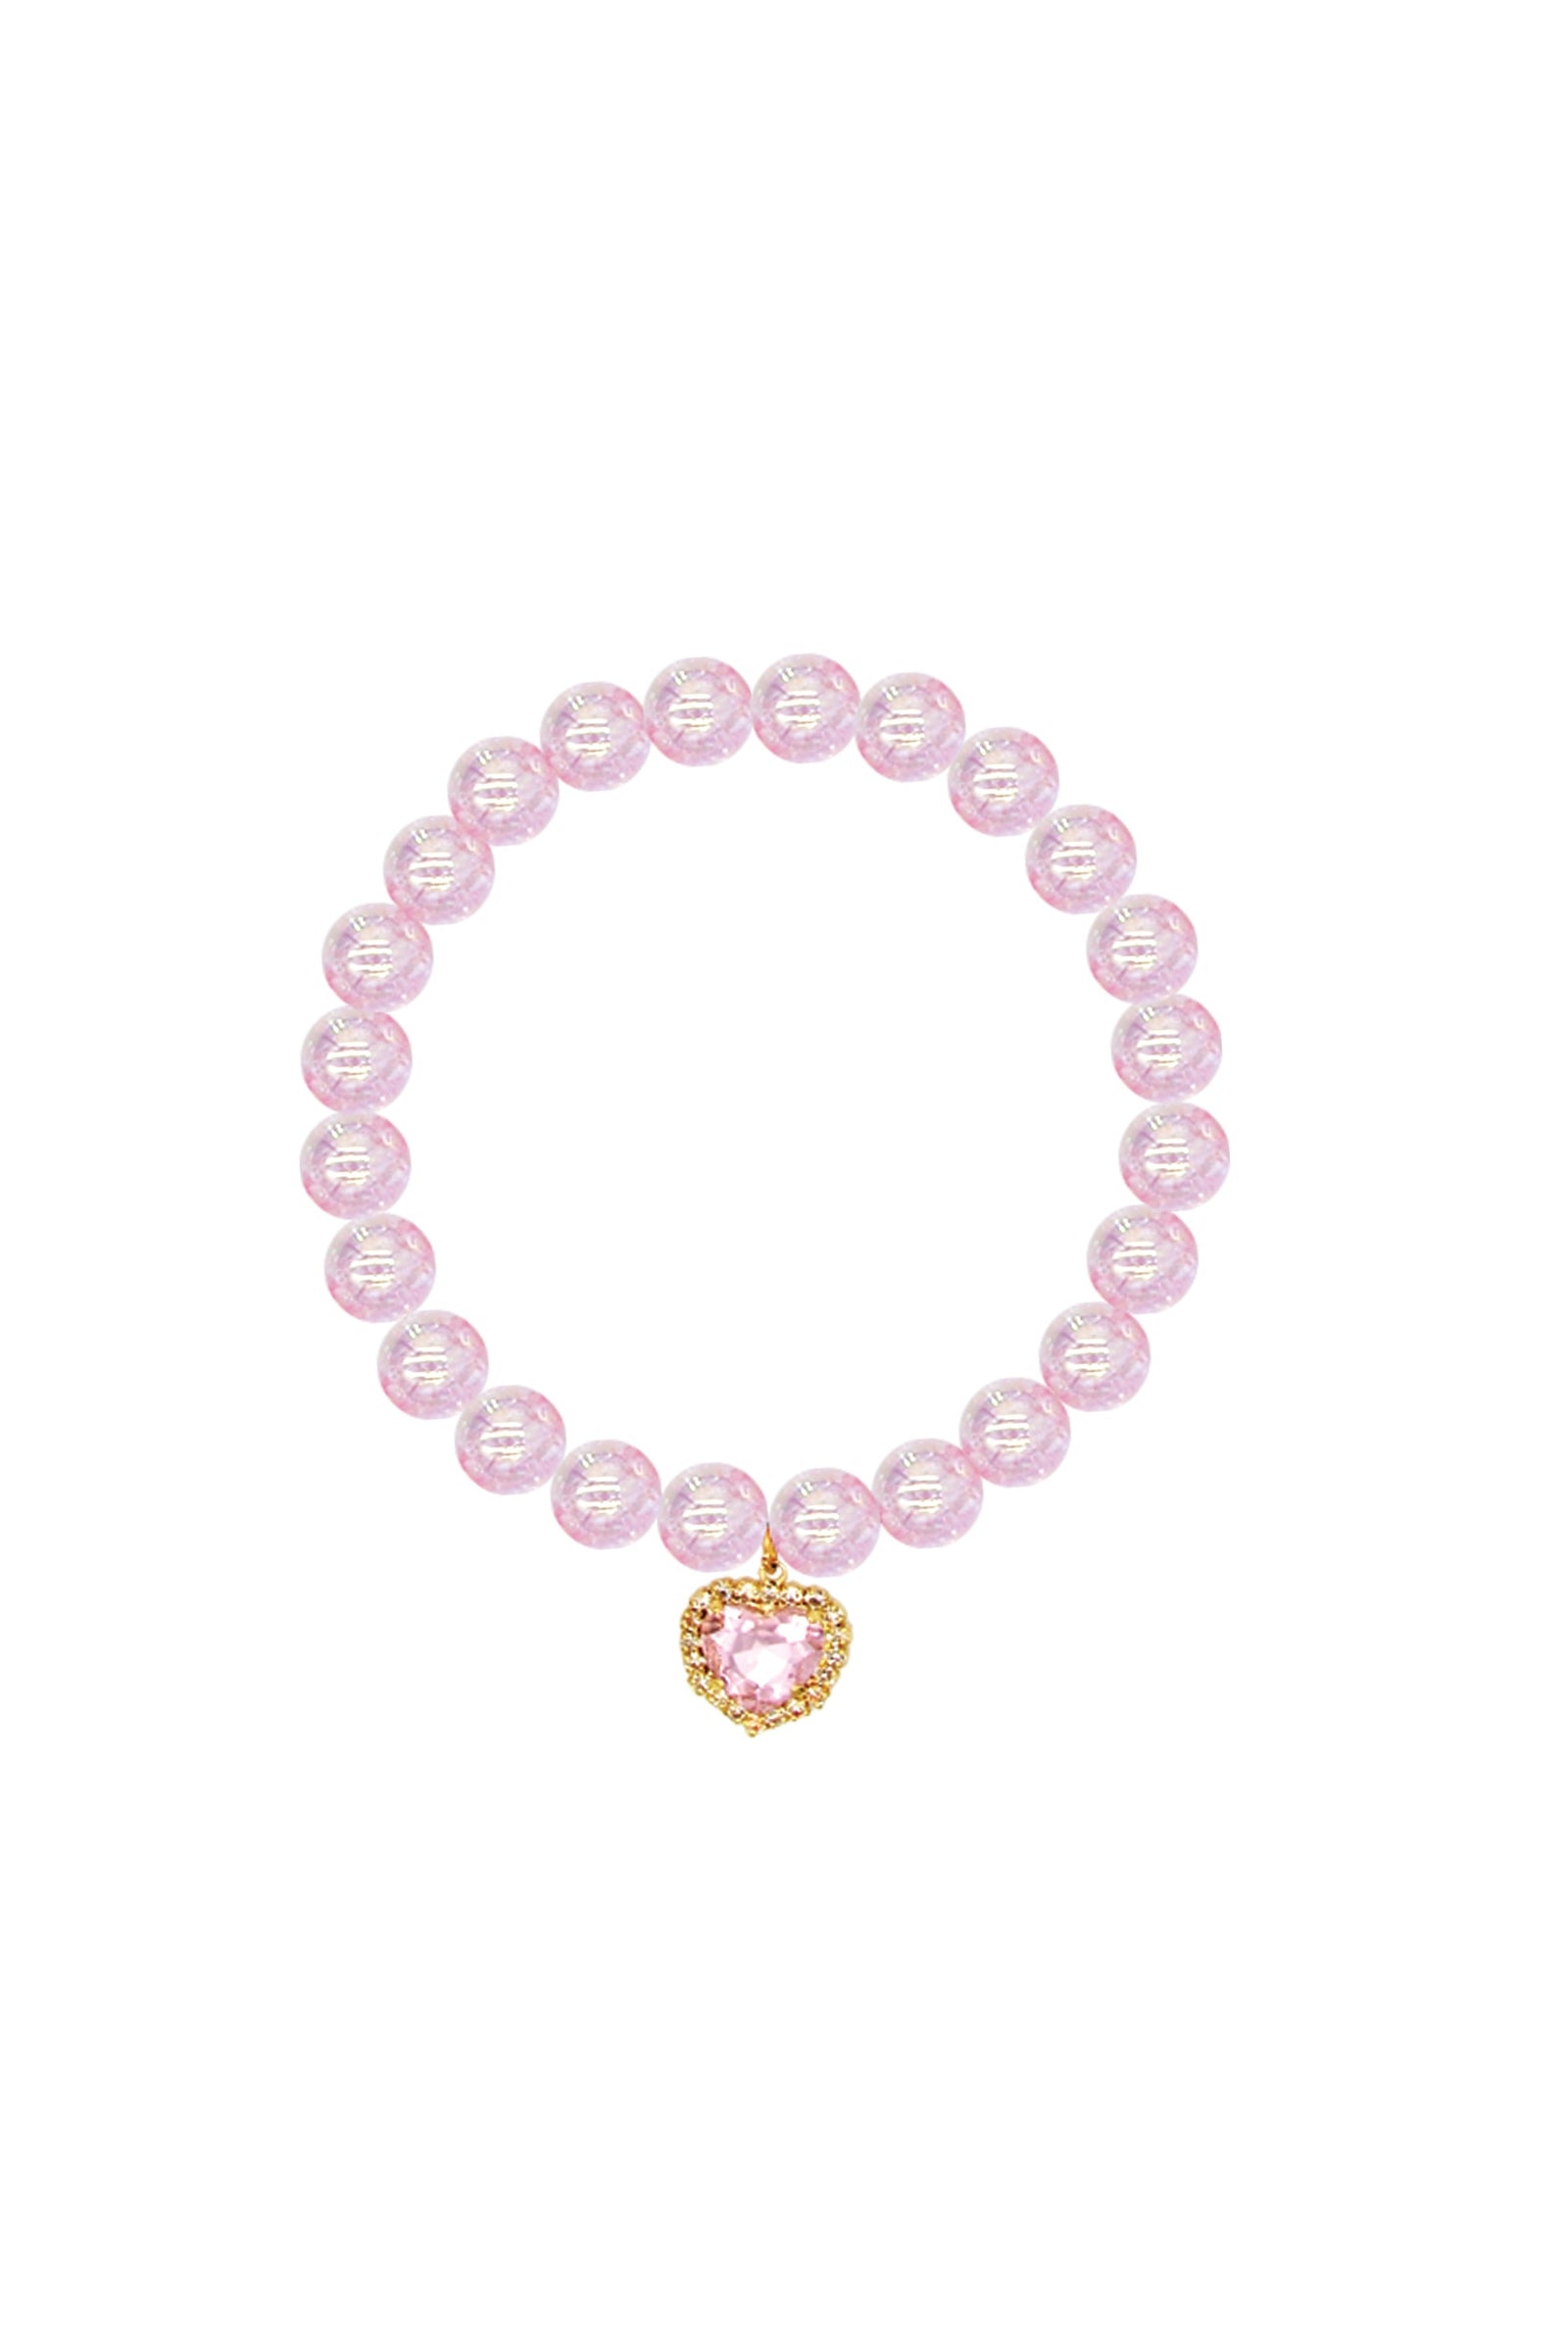 Enchanting Heart Bracelet Set by Great Pretenders #84108